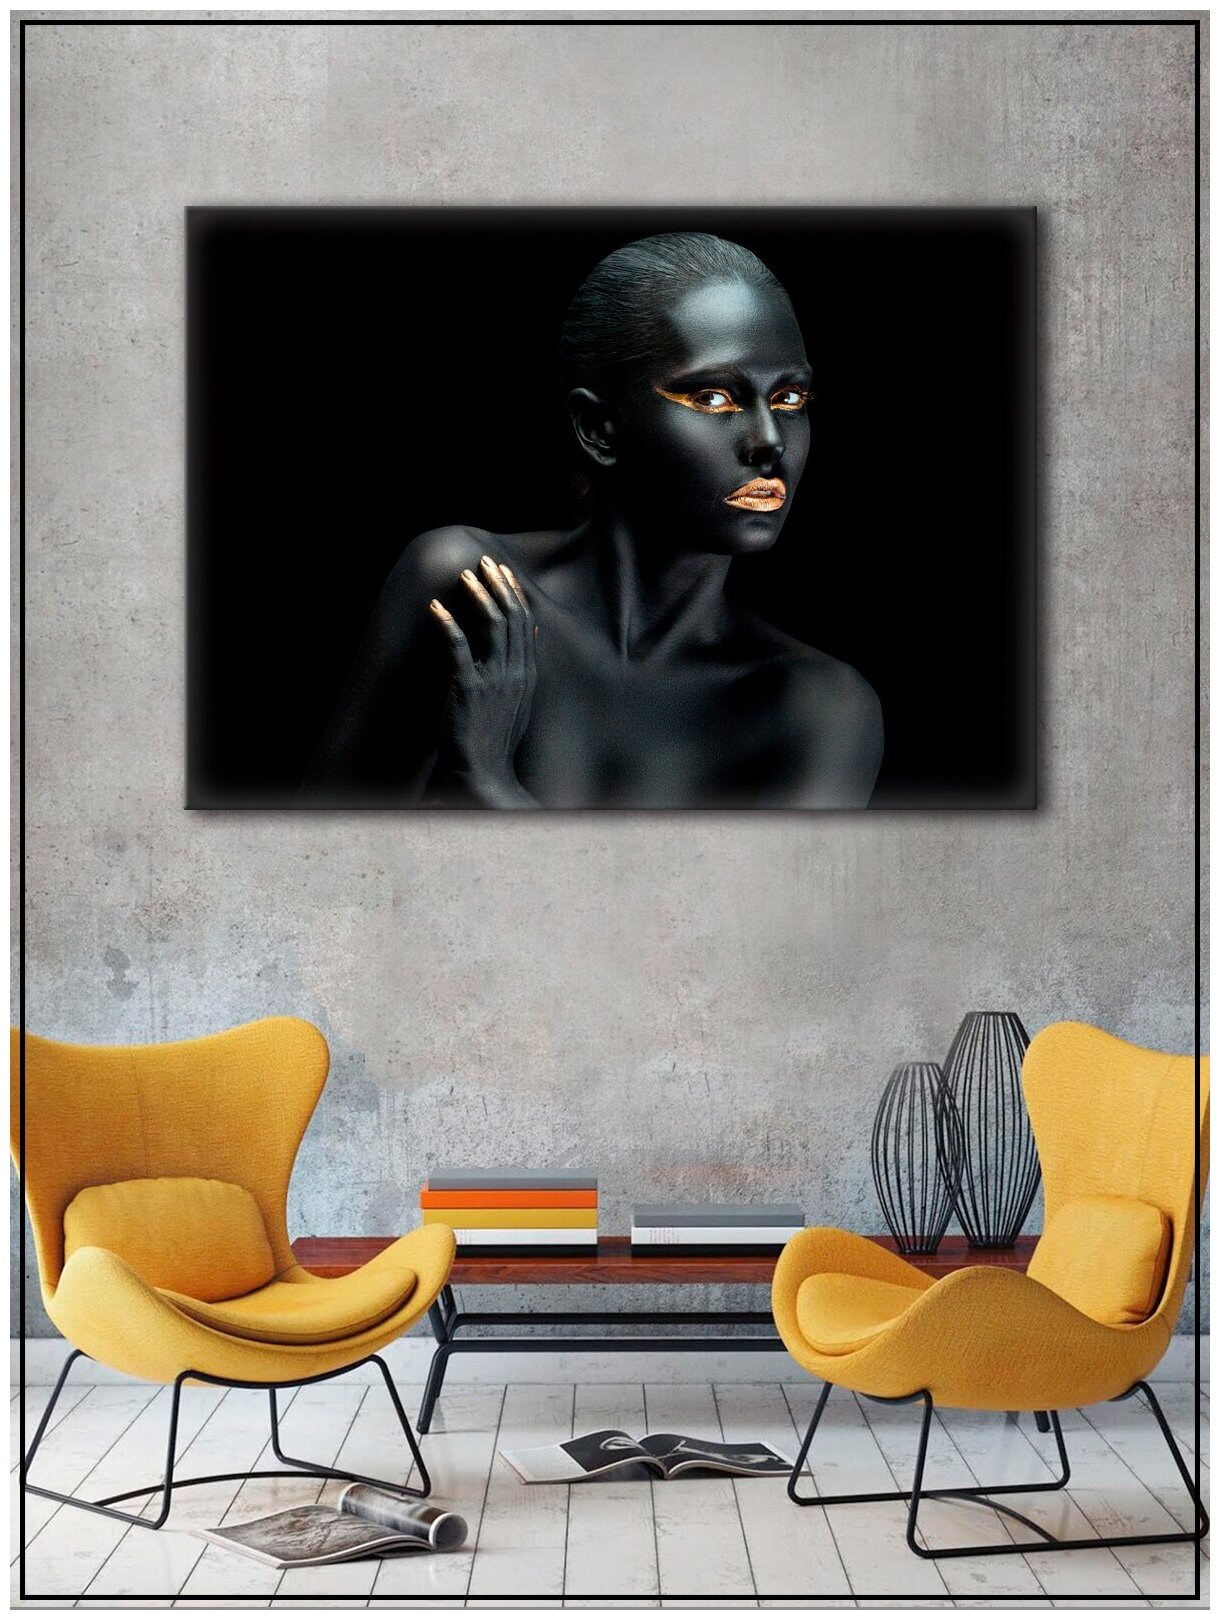 Картина для интерьера на натуральном хлопковом холсте "Девушка черное золото", 30*40см, холст на подрамнике, картина в подарок для дома